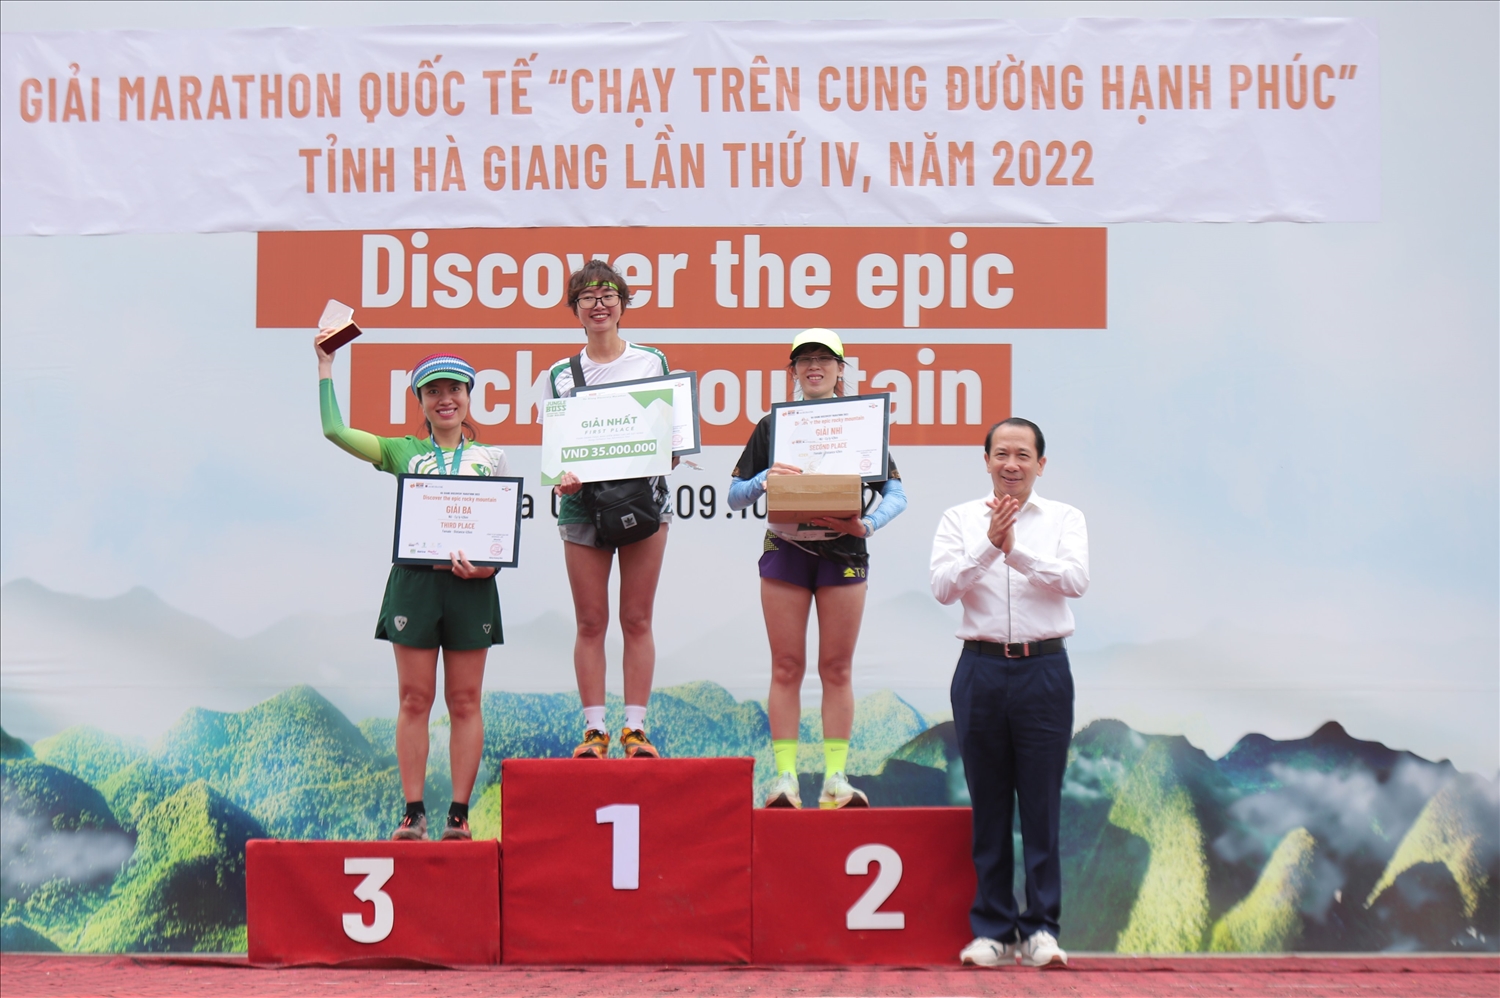 Đồng chí Trần Đức Quý, Phó Chủ tịch UBND tỉnh Hà Giang trao giải Nhất, Nhì, Ba cho các VĐV ở các nội dung chạy